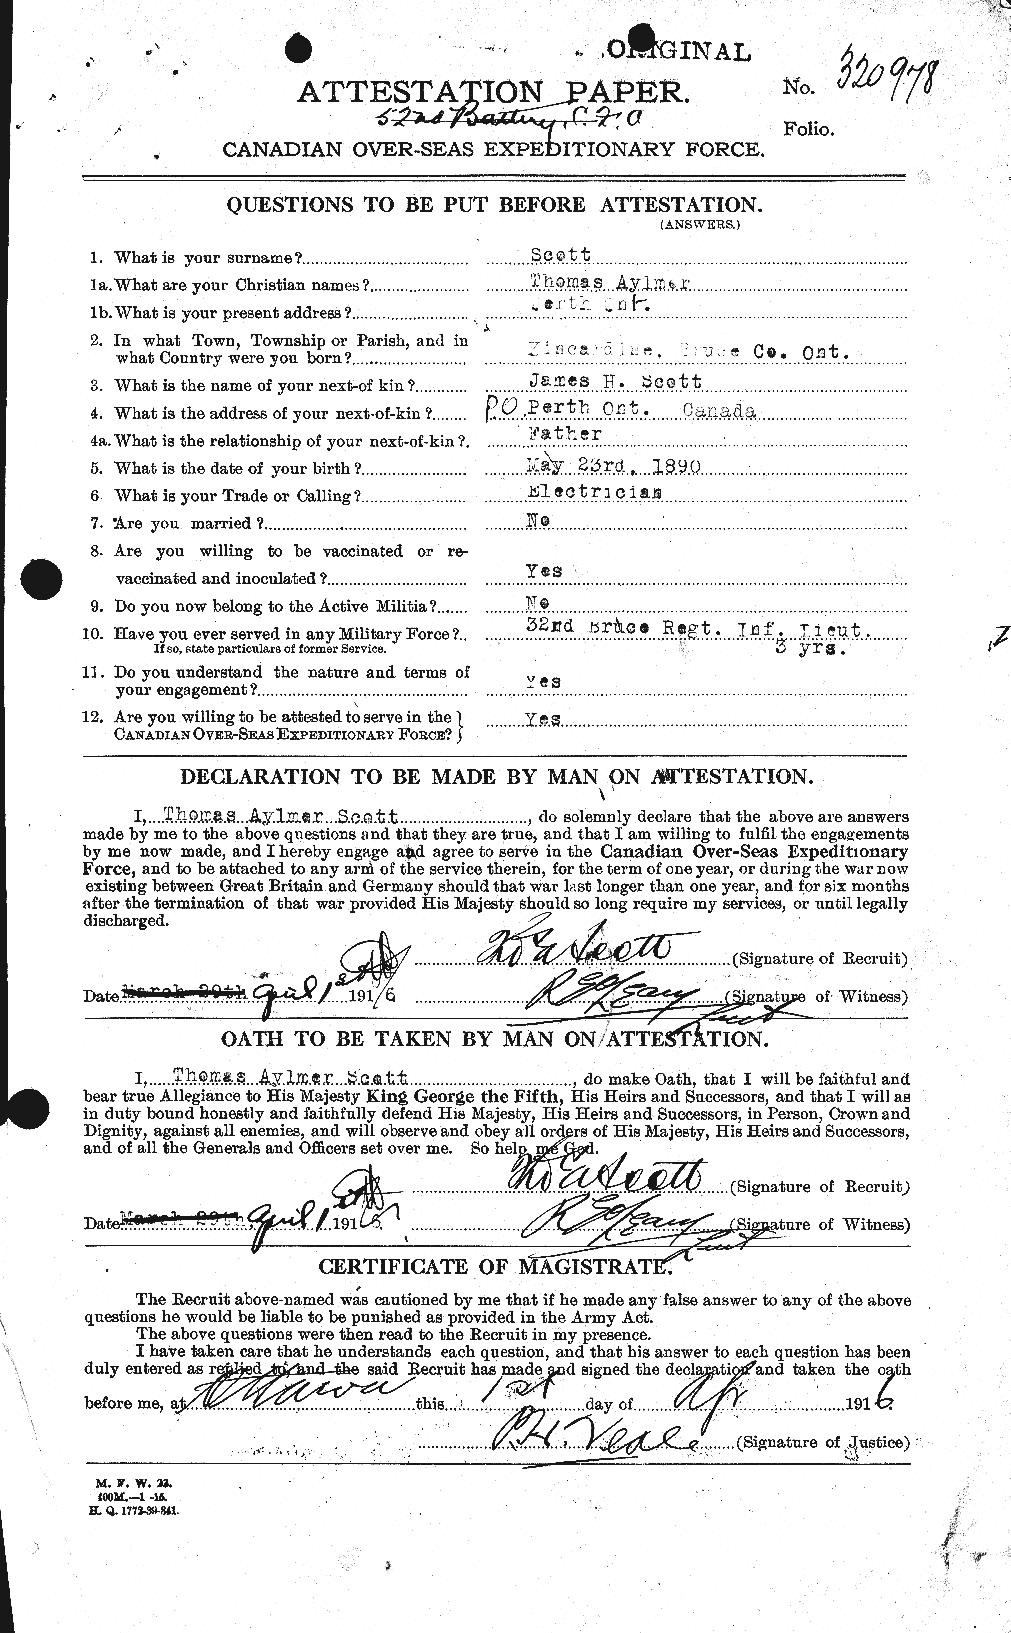 Dossiers du Personnel de la Première Guerre mondiale - CEC 088524a